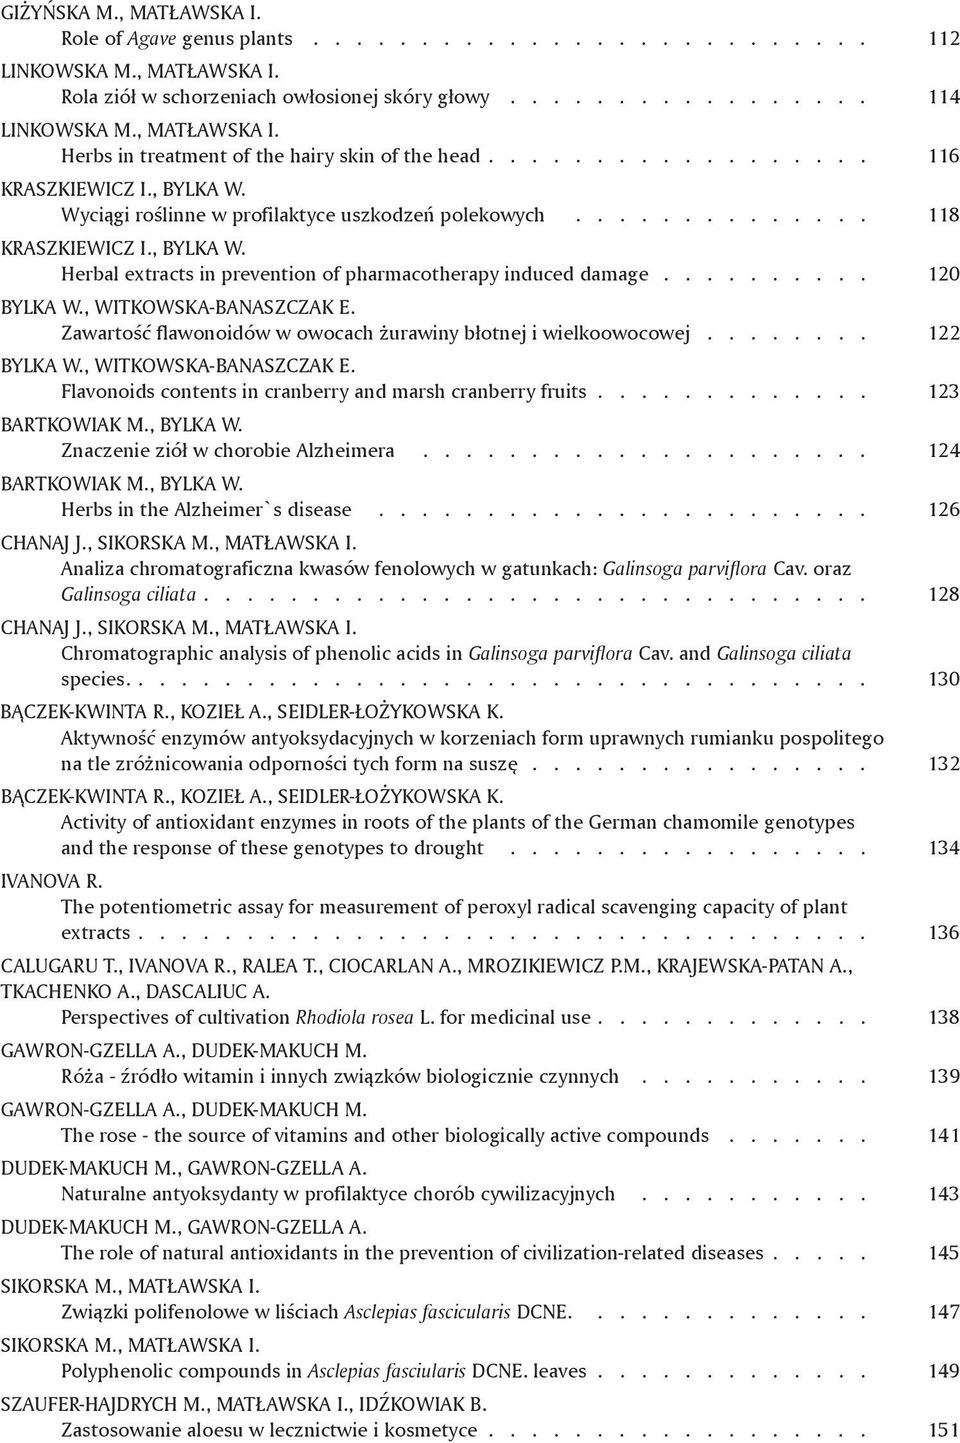 ............. 118 KRASZKIEWICZ I., BYLKA W. Herbal extracts in prevention of pharmacotherapy induced damage.......... 120 BYLKA W., WITKOWSKA-BANASZCZAK E.